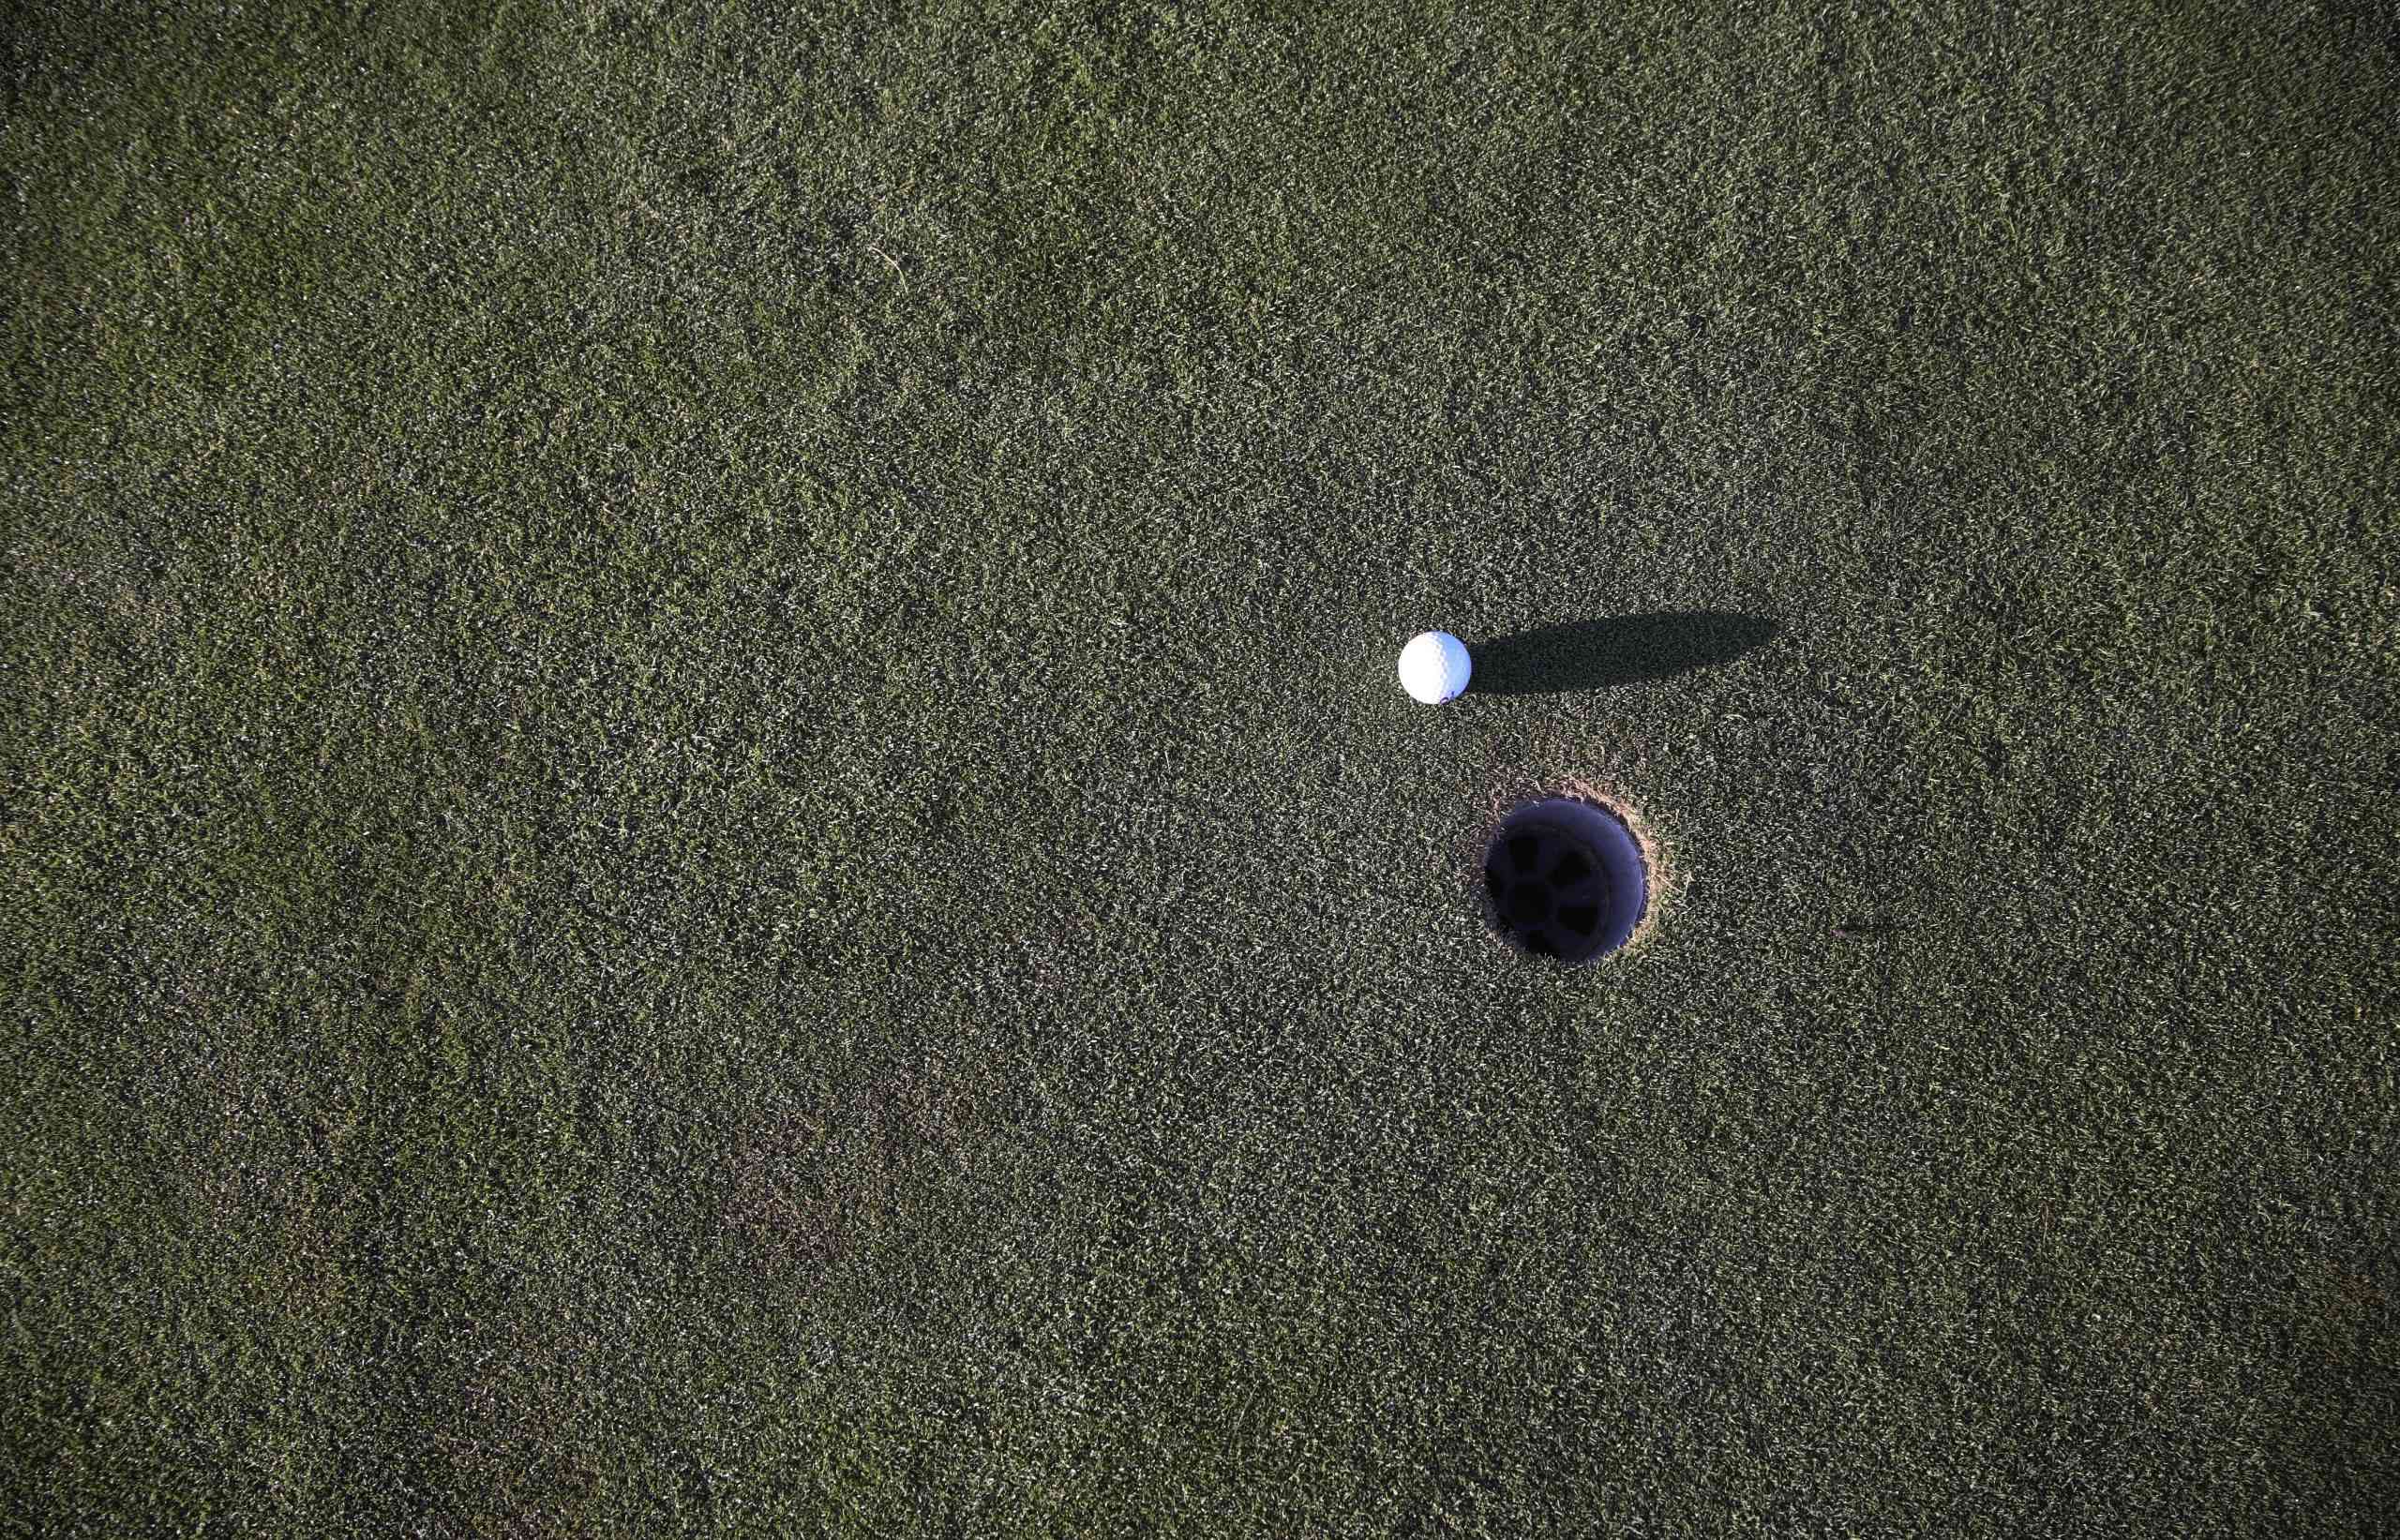 Golf ball on a course near the hole